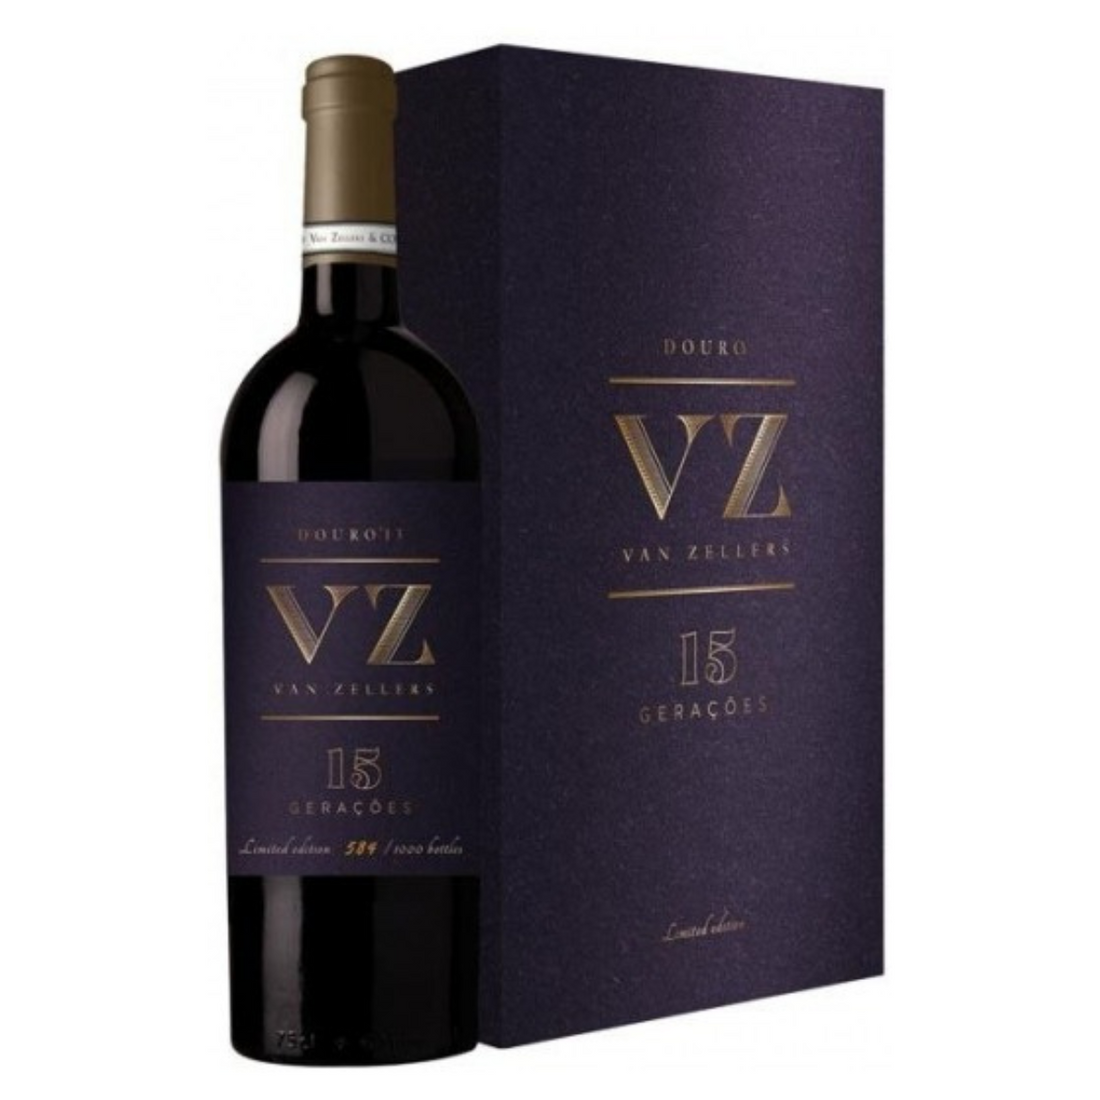 Vinho VZ Van Zellers 15 Geração tinto 2015 CONJ 2 GRFS